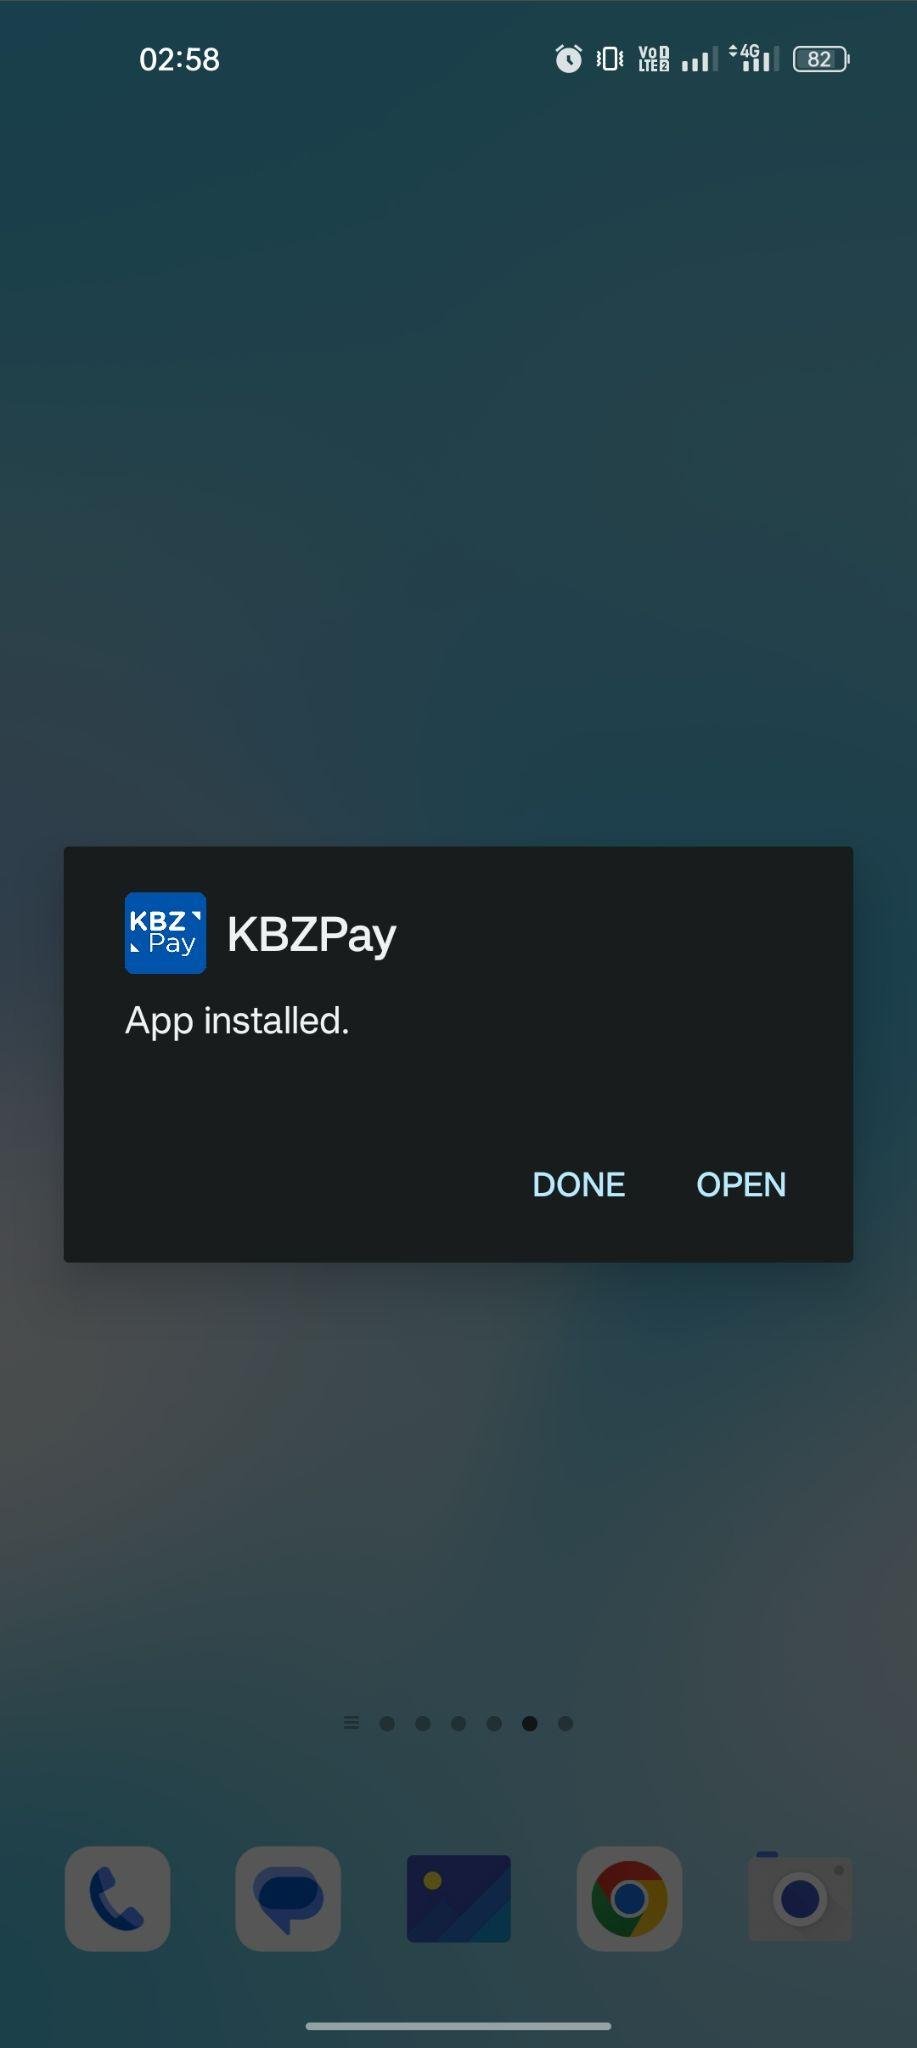 KBZPay apk installed